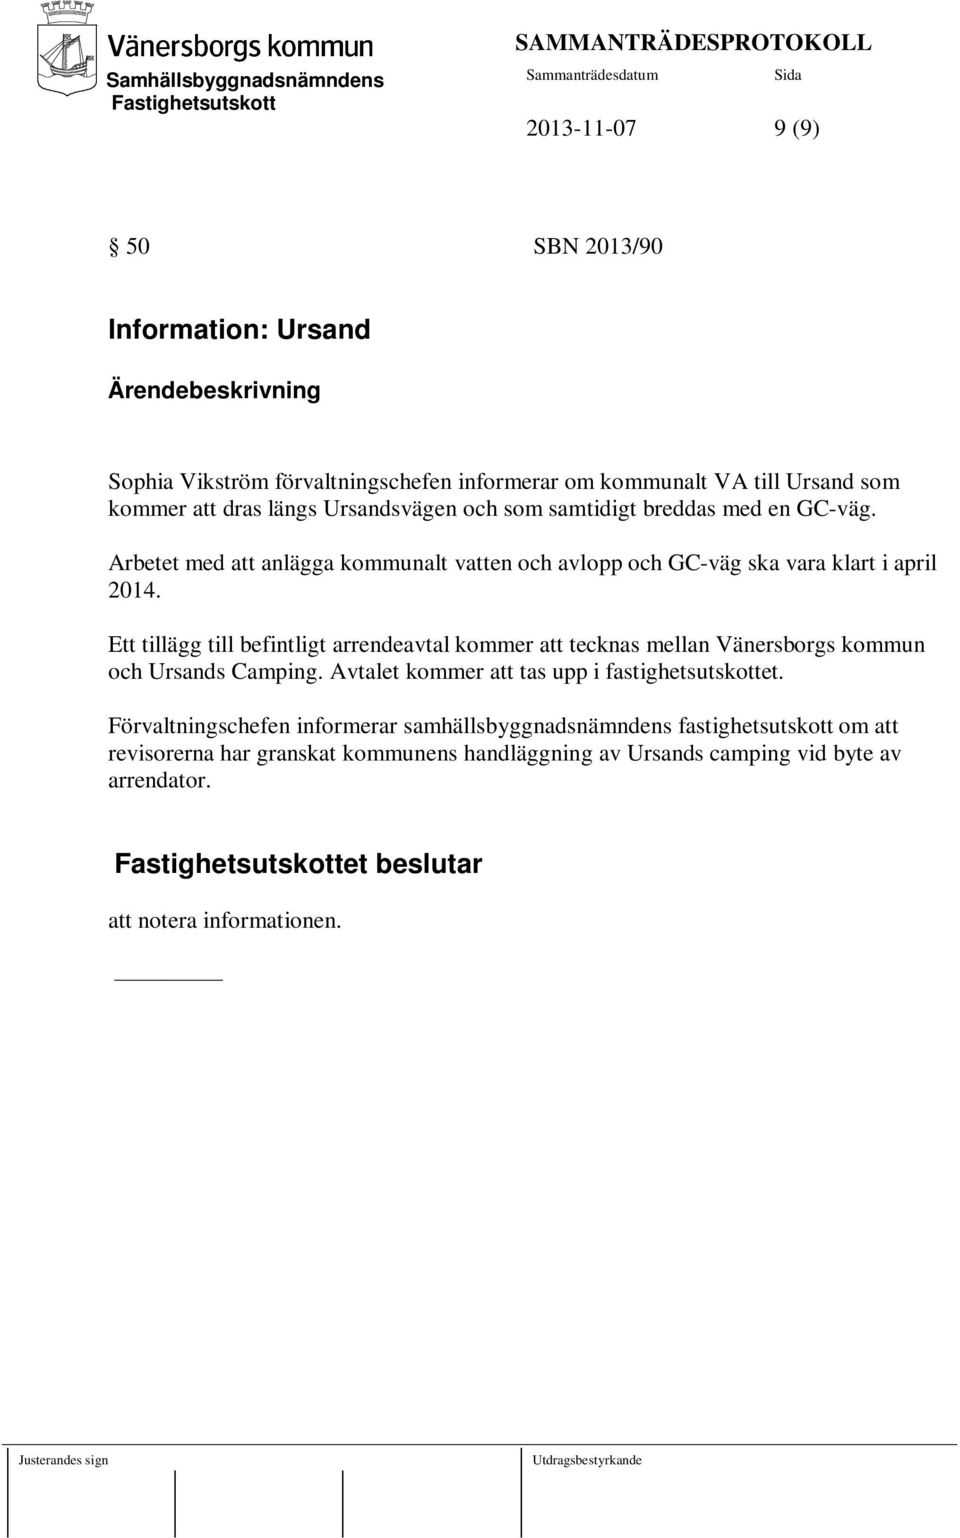 Ett tillägg till befintligt arrendeavtal kommer att tecknas mellan Vänersborgs kommun och Ursands Camping. Avtalet kommer att tas upp i fastighetsutskottet.